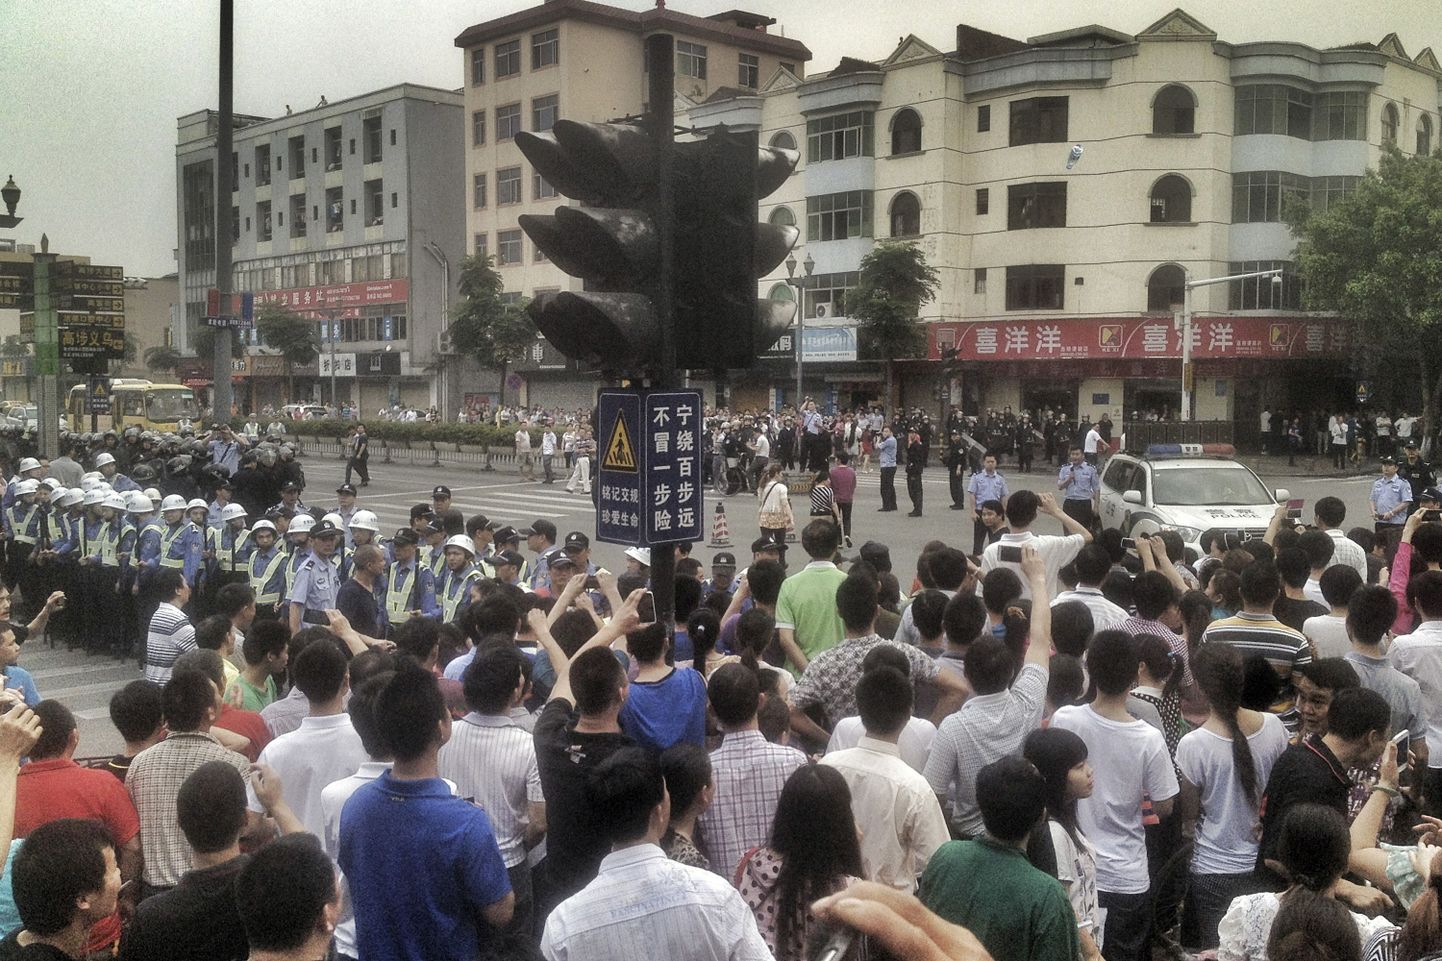 Hiina töötajad streikimas. Pilt on tehtud 18. aprillil.